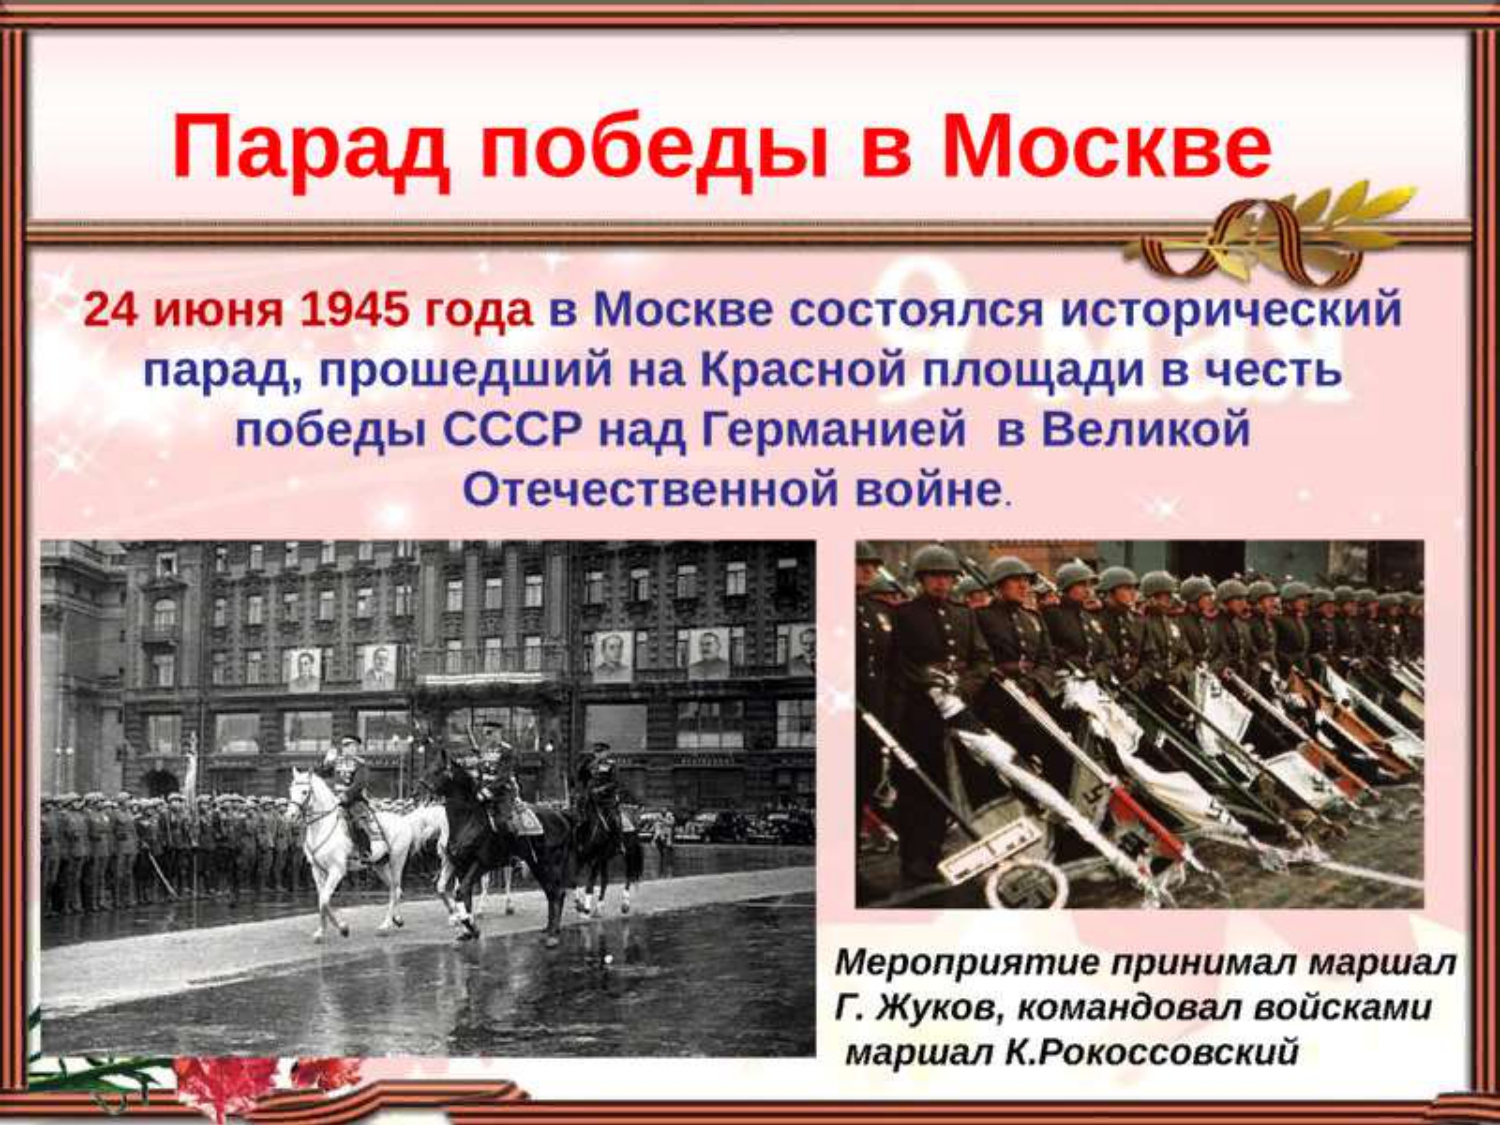 Картинка с изображением парада победы в Москве